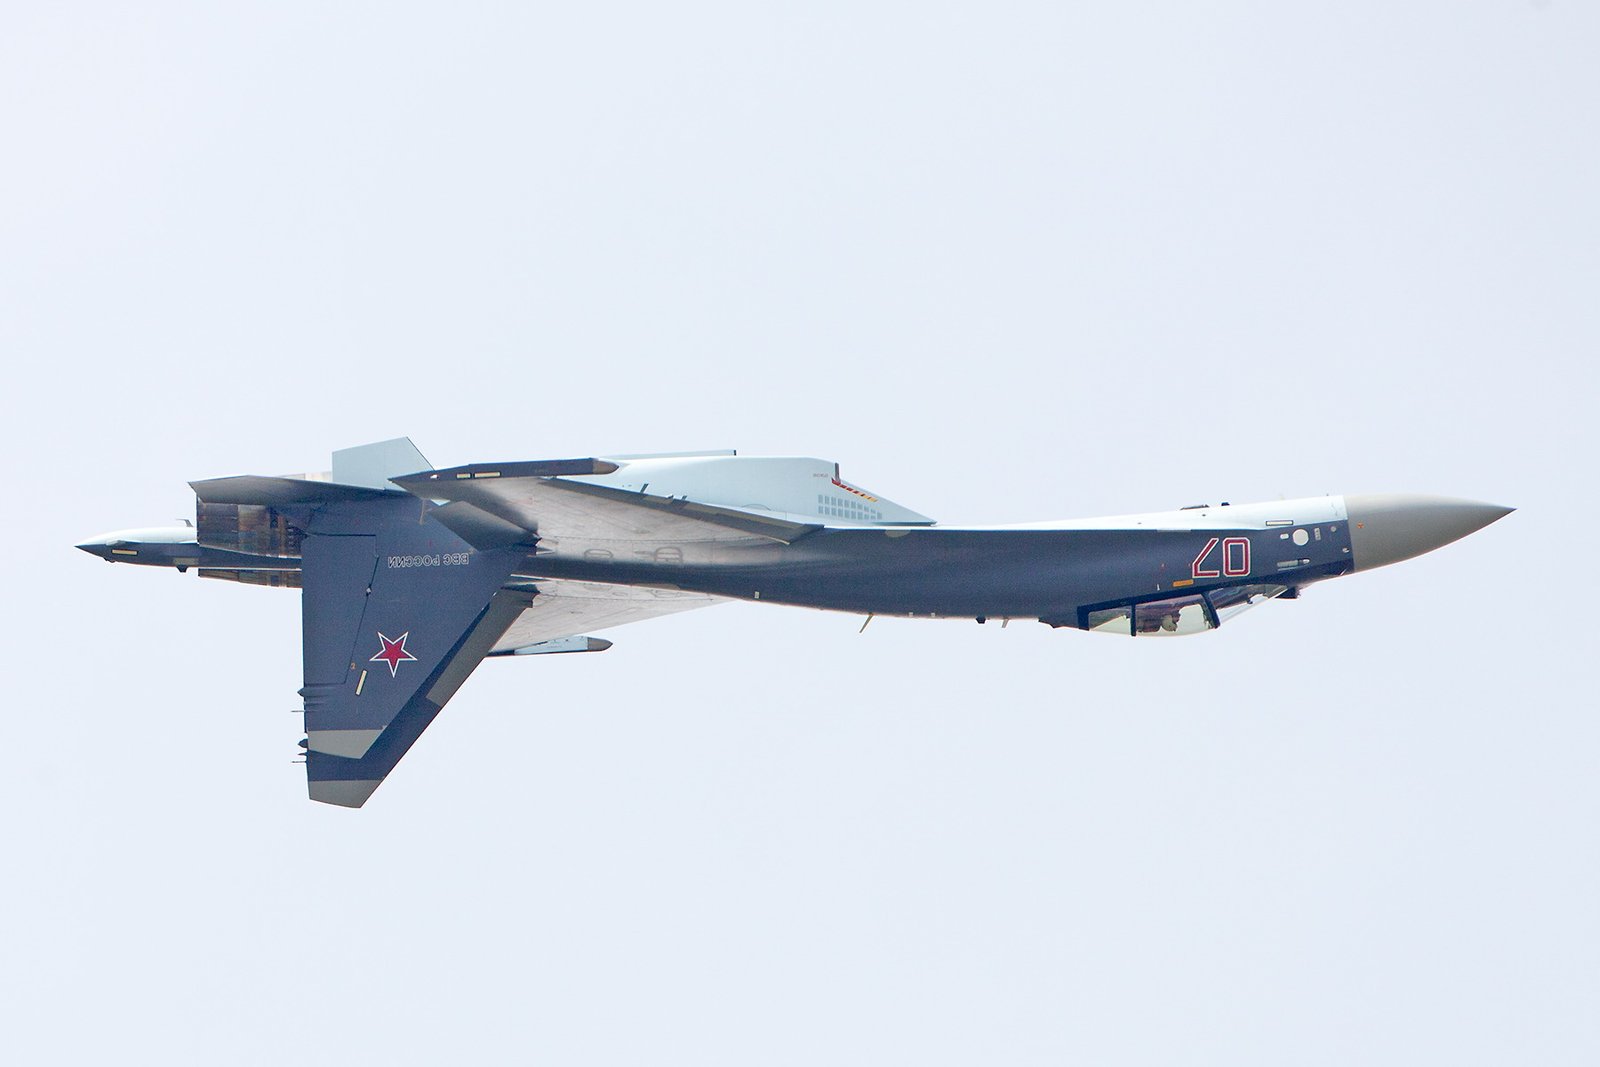 A Russian Su-35 fighter